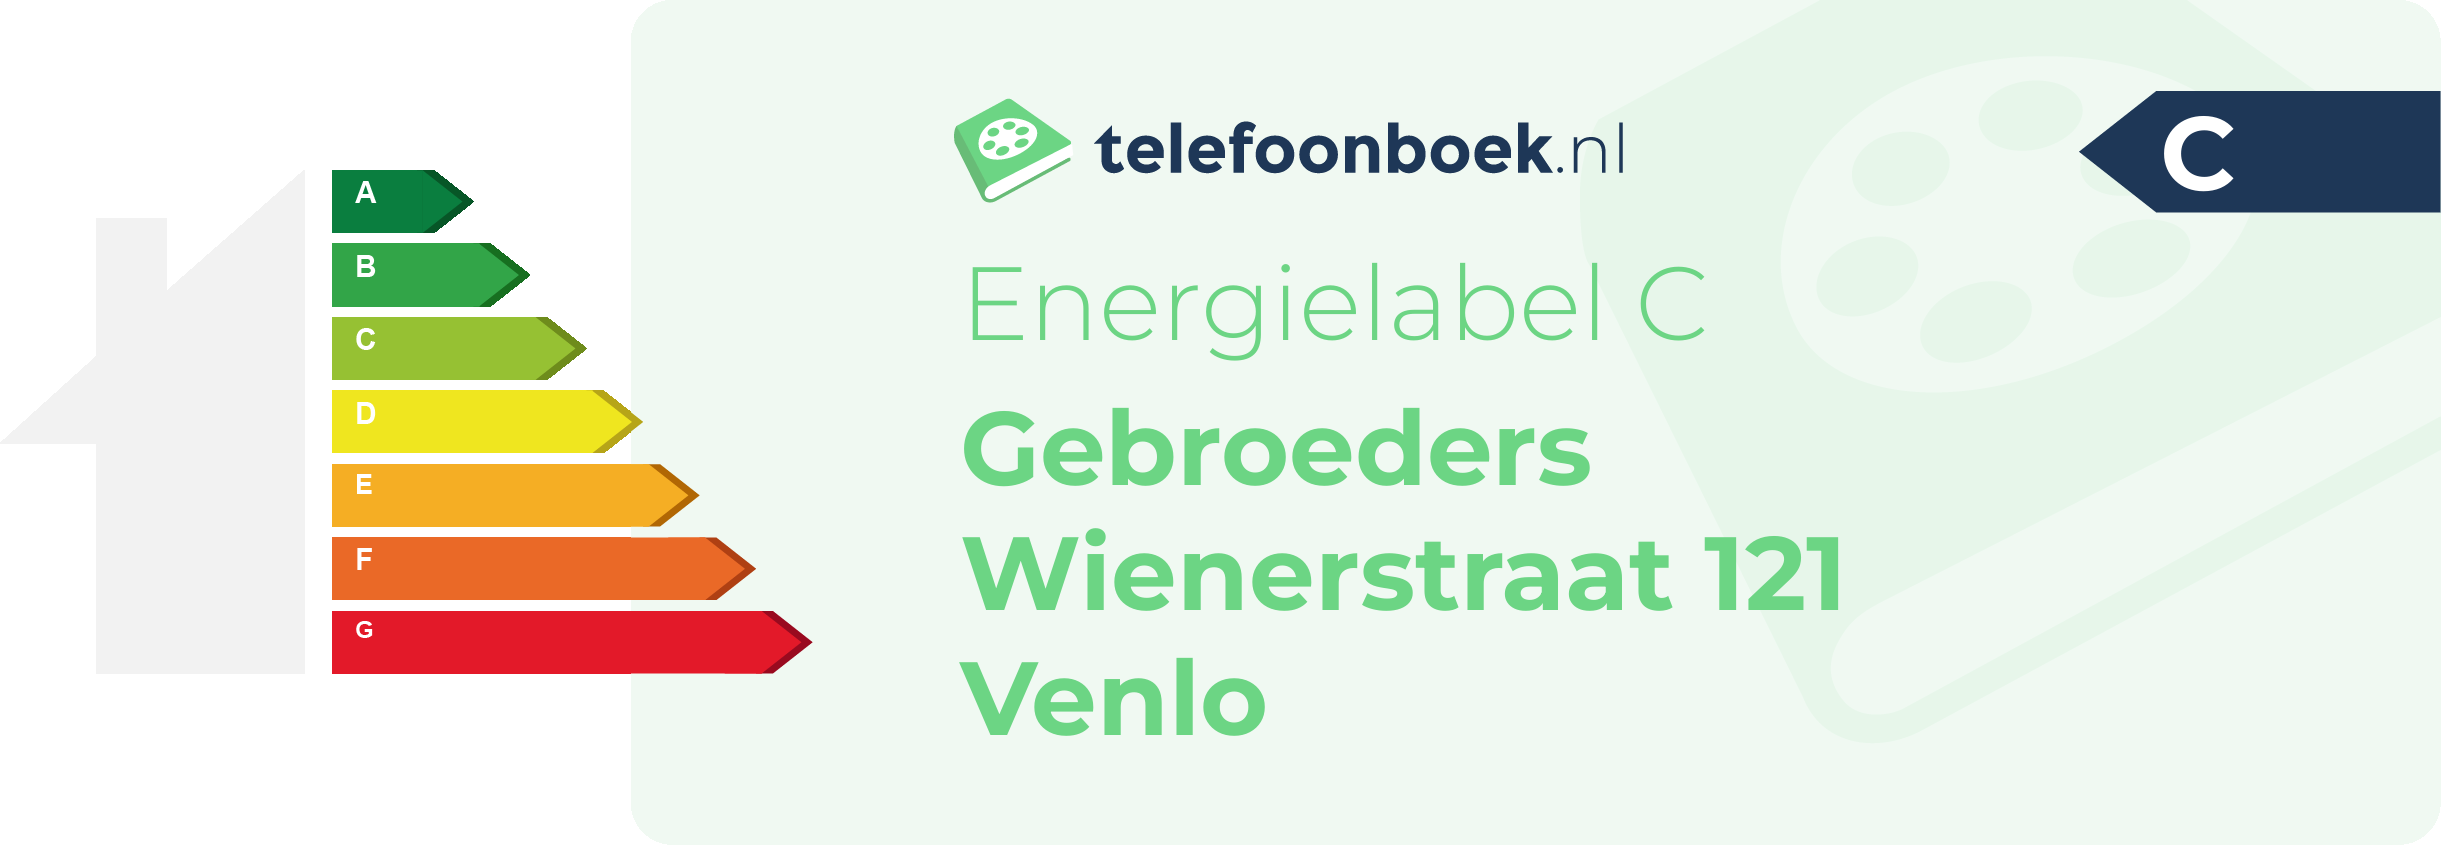 Energielabel Gebroeders Wienerstraat 121 Venlo